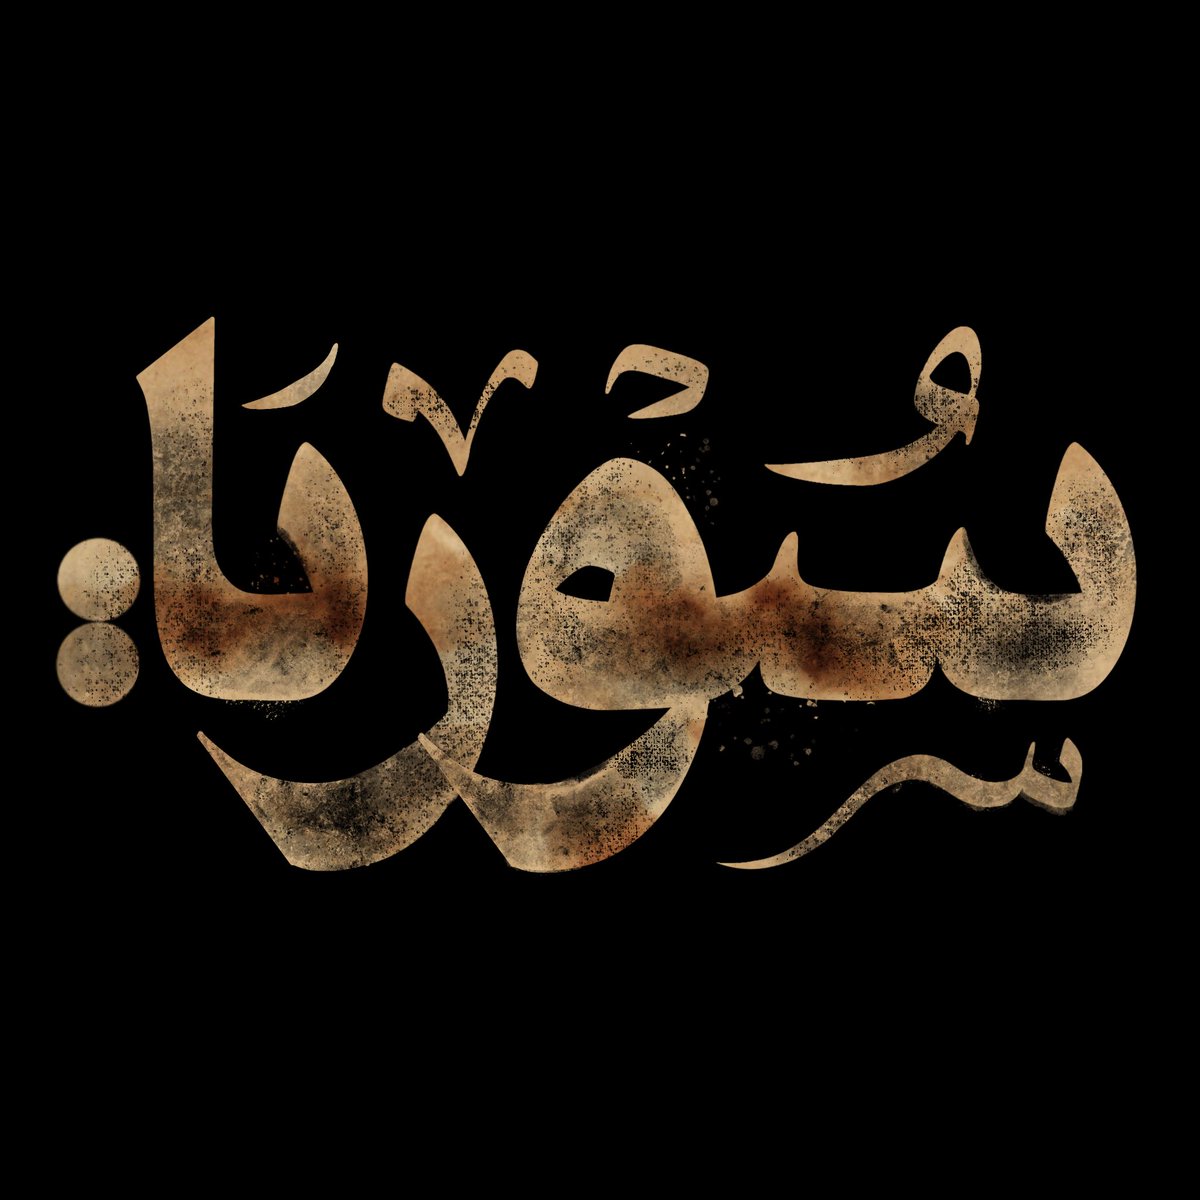 سوريا 
Retro arabic typography 
.
.
.
.
.
.
.
.
#typography #graphicdesign #design #art #lettering #logo #type #illustration #branding #calligraphy #handlettering #graphicdesigner #graphic #designer #creative #illustrator #typographydesign #artwork #typography #calligraphy